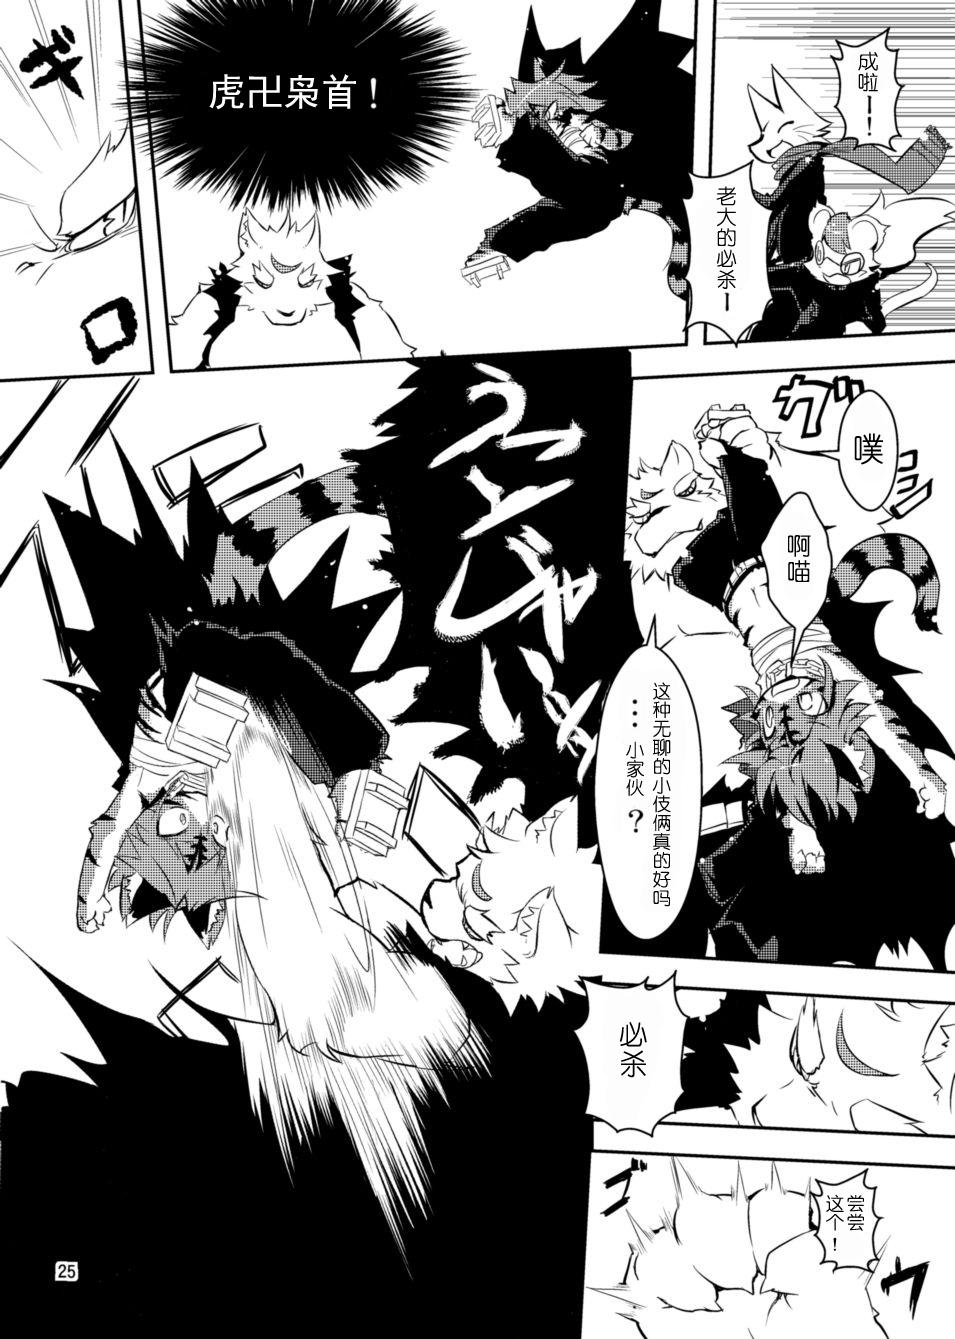 Paja Sakigake! Toraman Bancho-chan! Screaming - Page 8